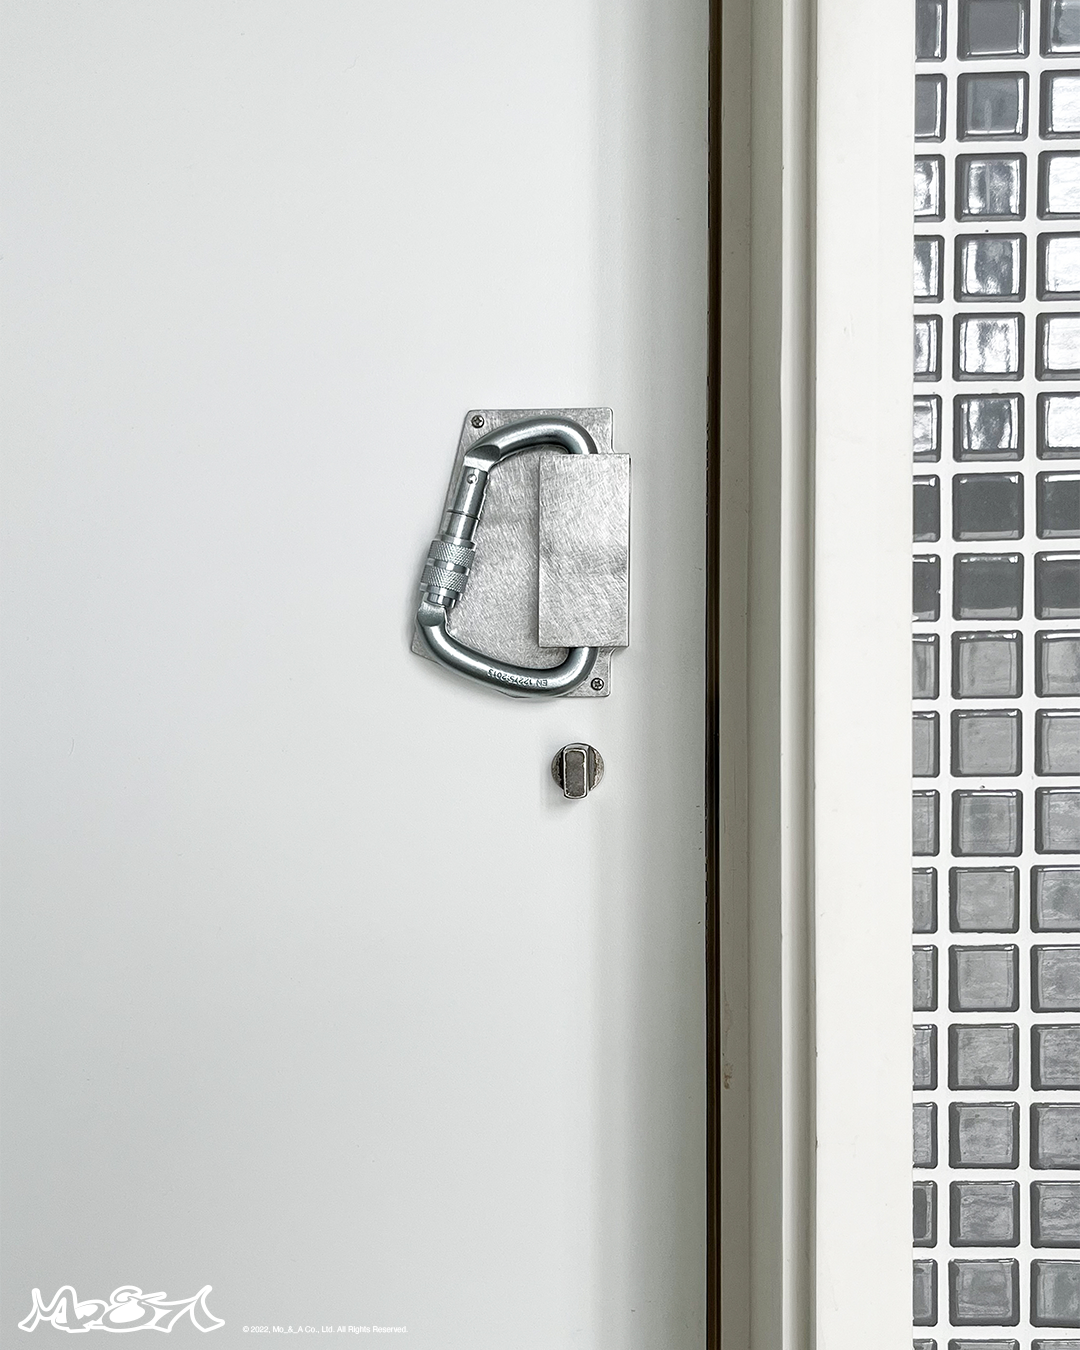 Mo_&_A Carabiner Wall Hook / Door Handle